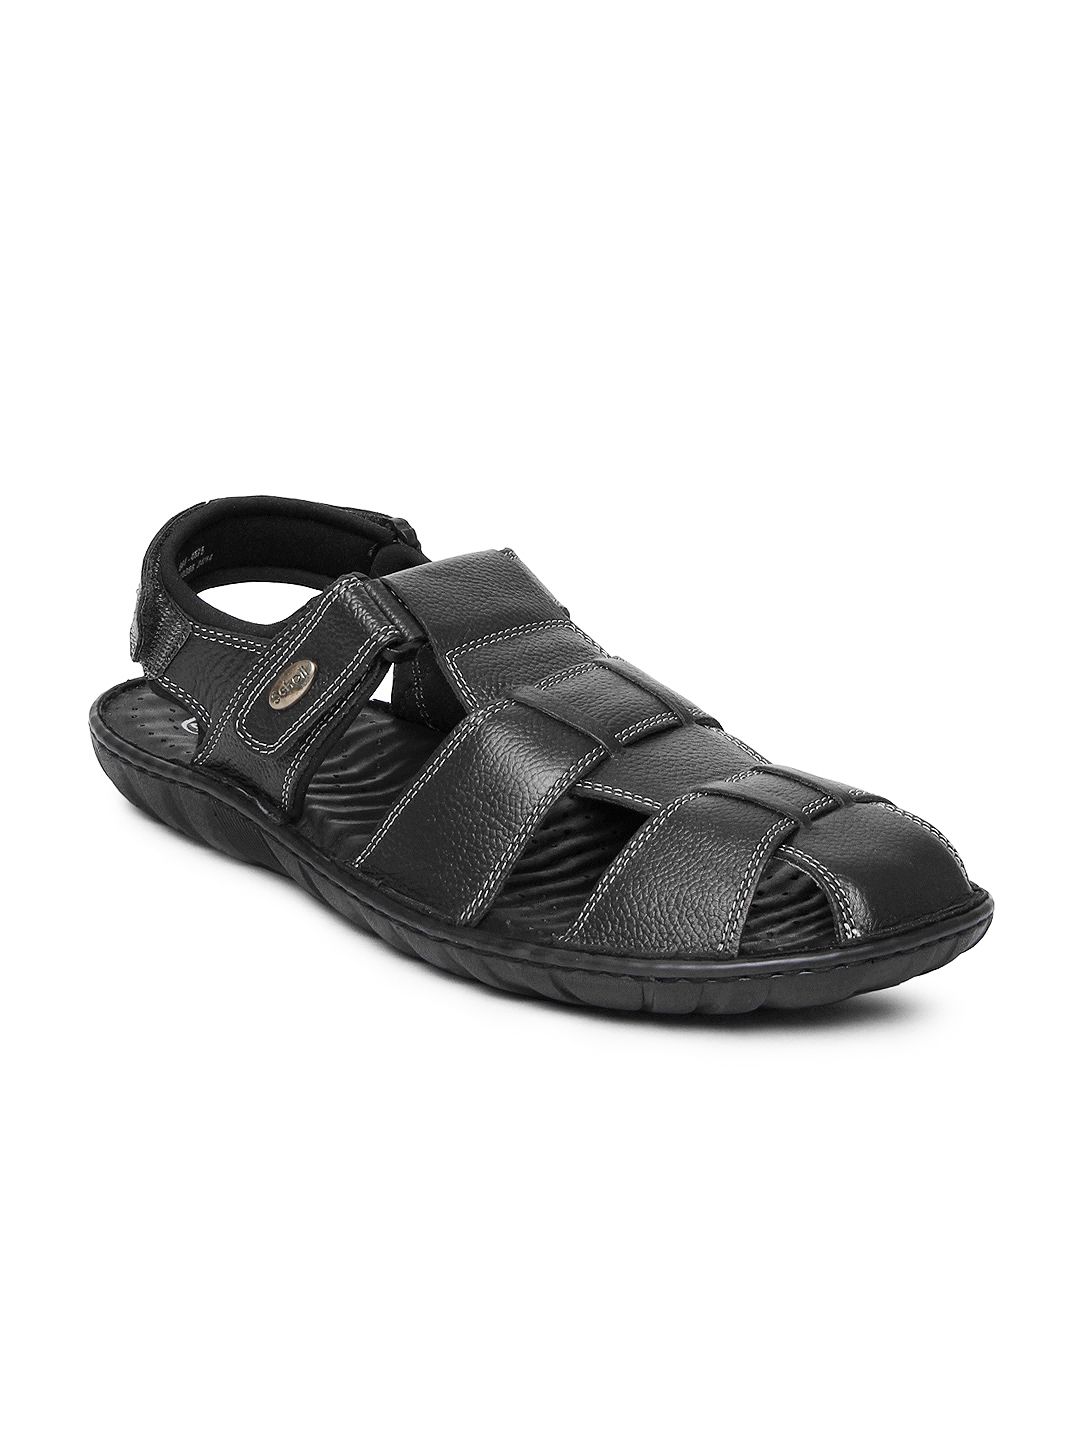 Buy Dr. Scholl Men Black Sandals - 323 - Footwear for Men - 344172